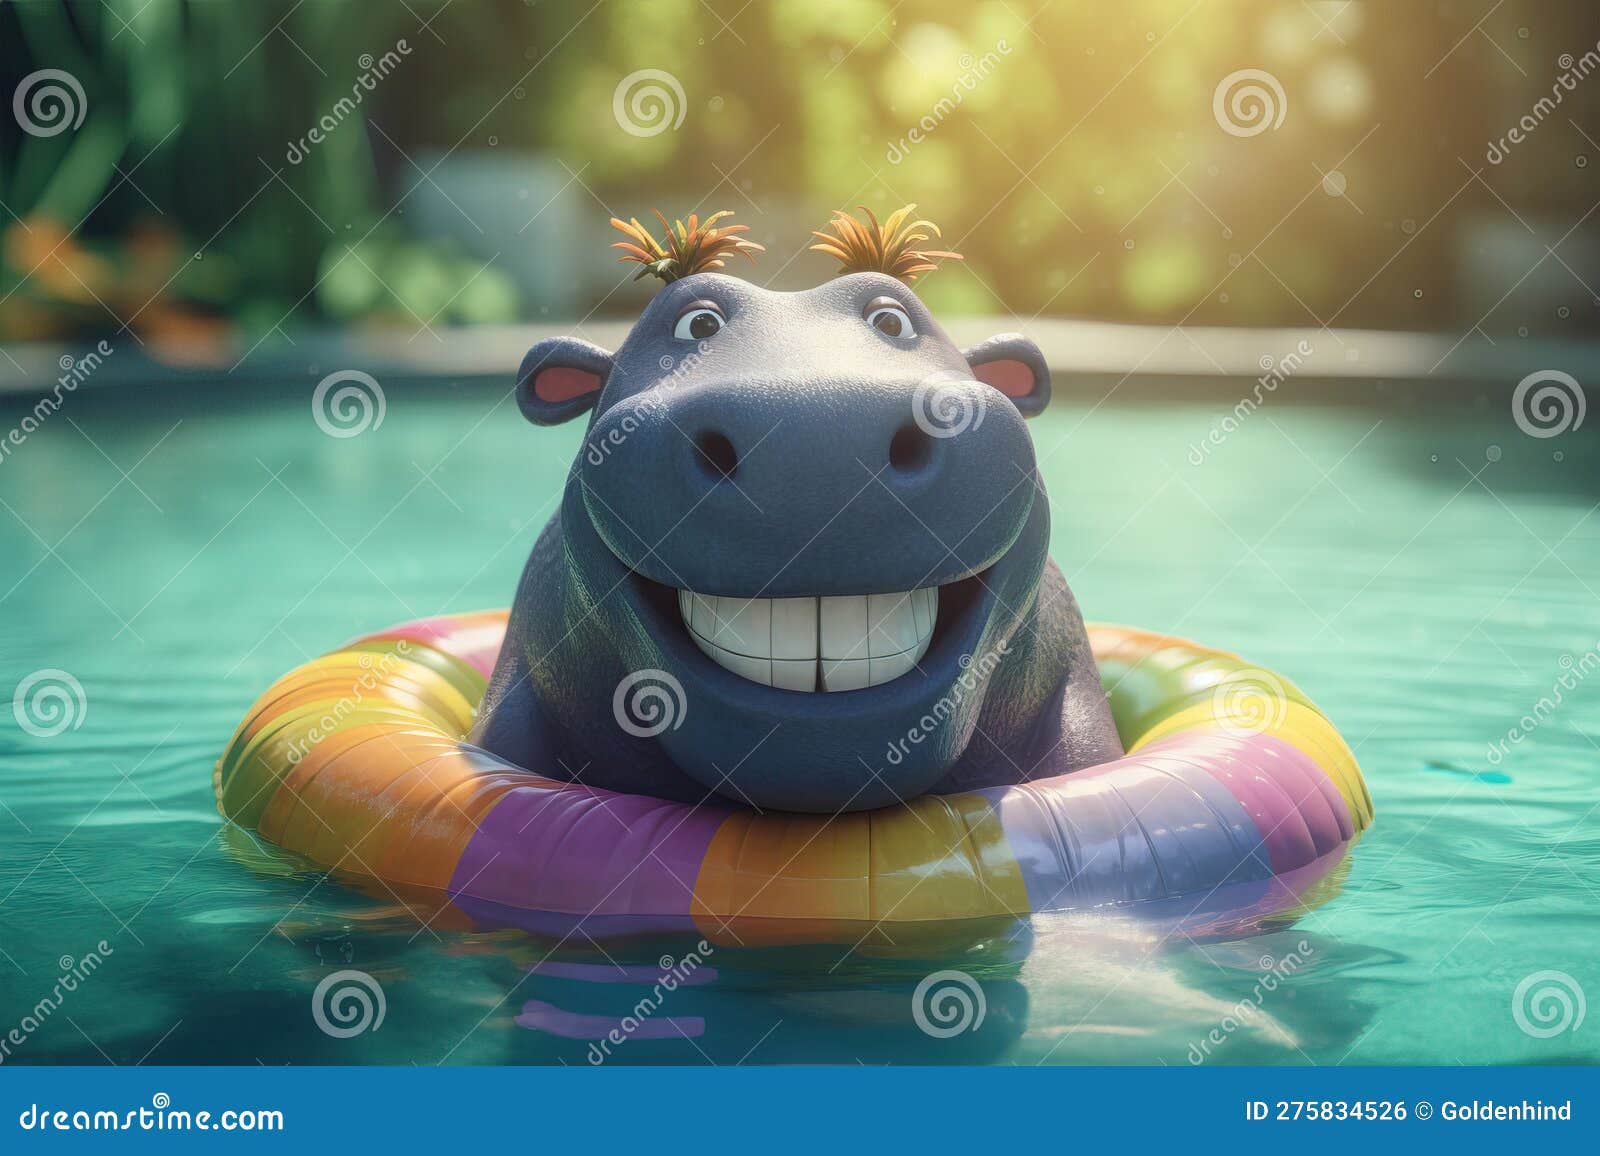 hipopótamo fofo sweeming em água azul e segurando uma melancia